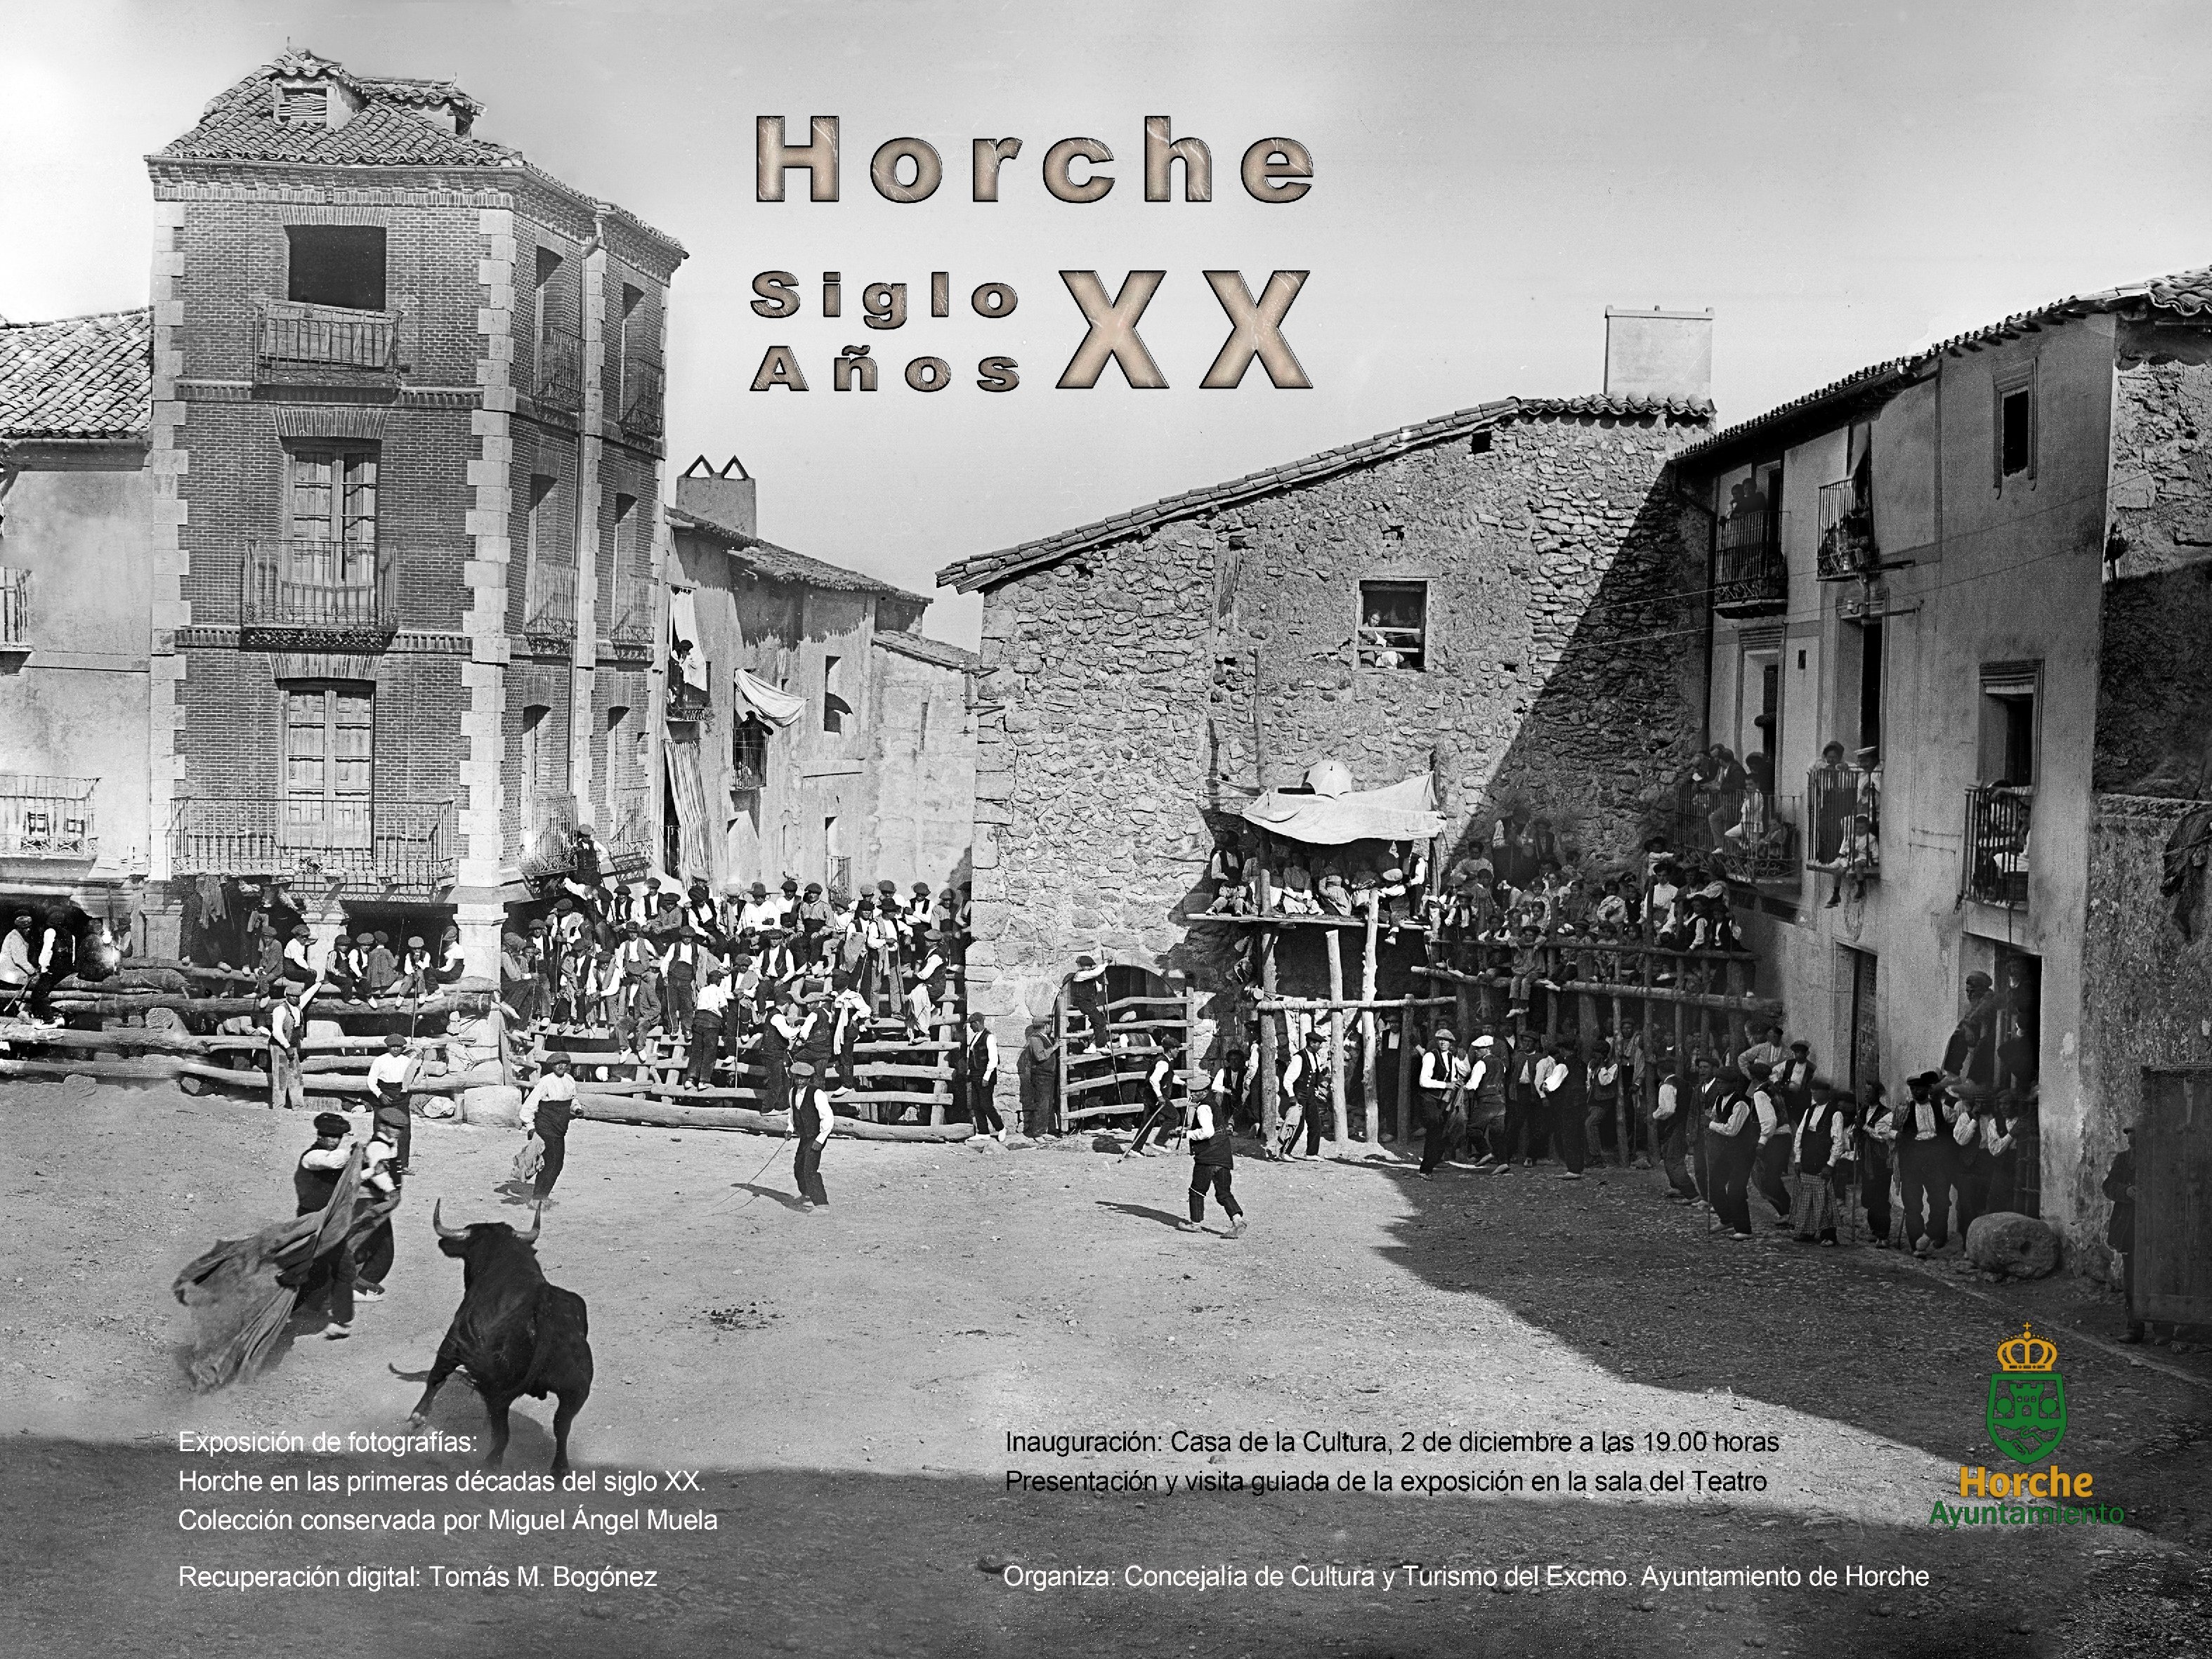 Horche recupera su pasado de principios del siglo XX a través de una exposición fotográfica